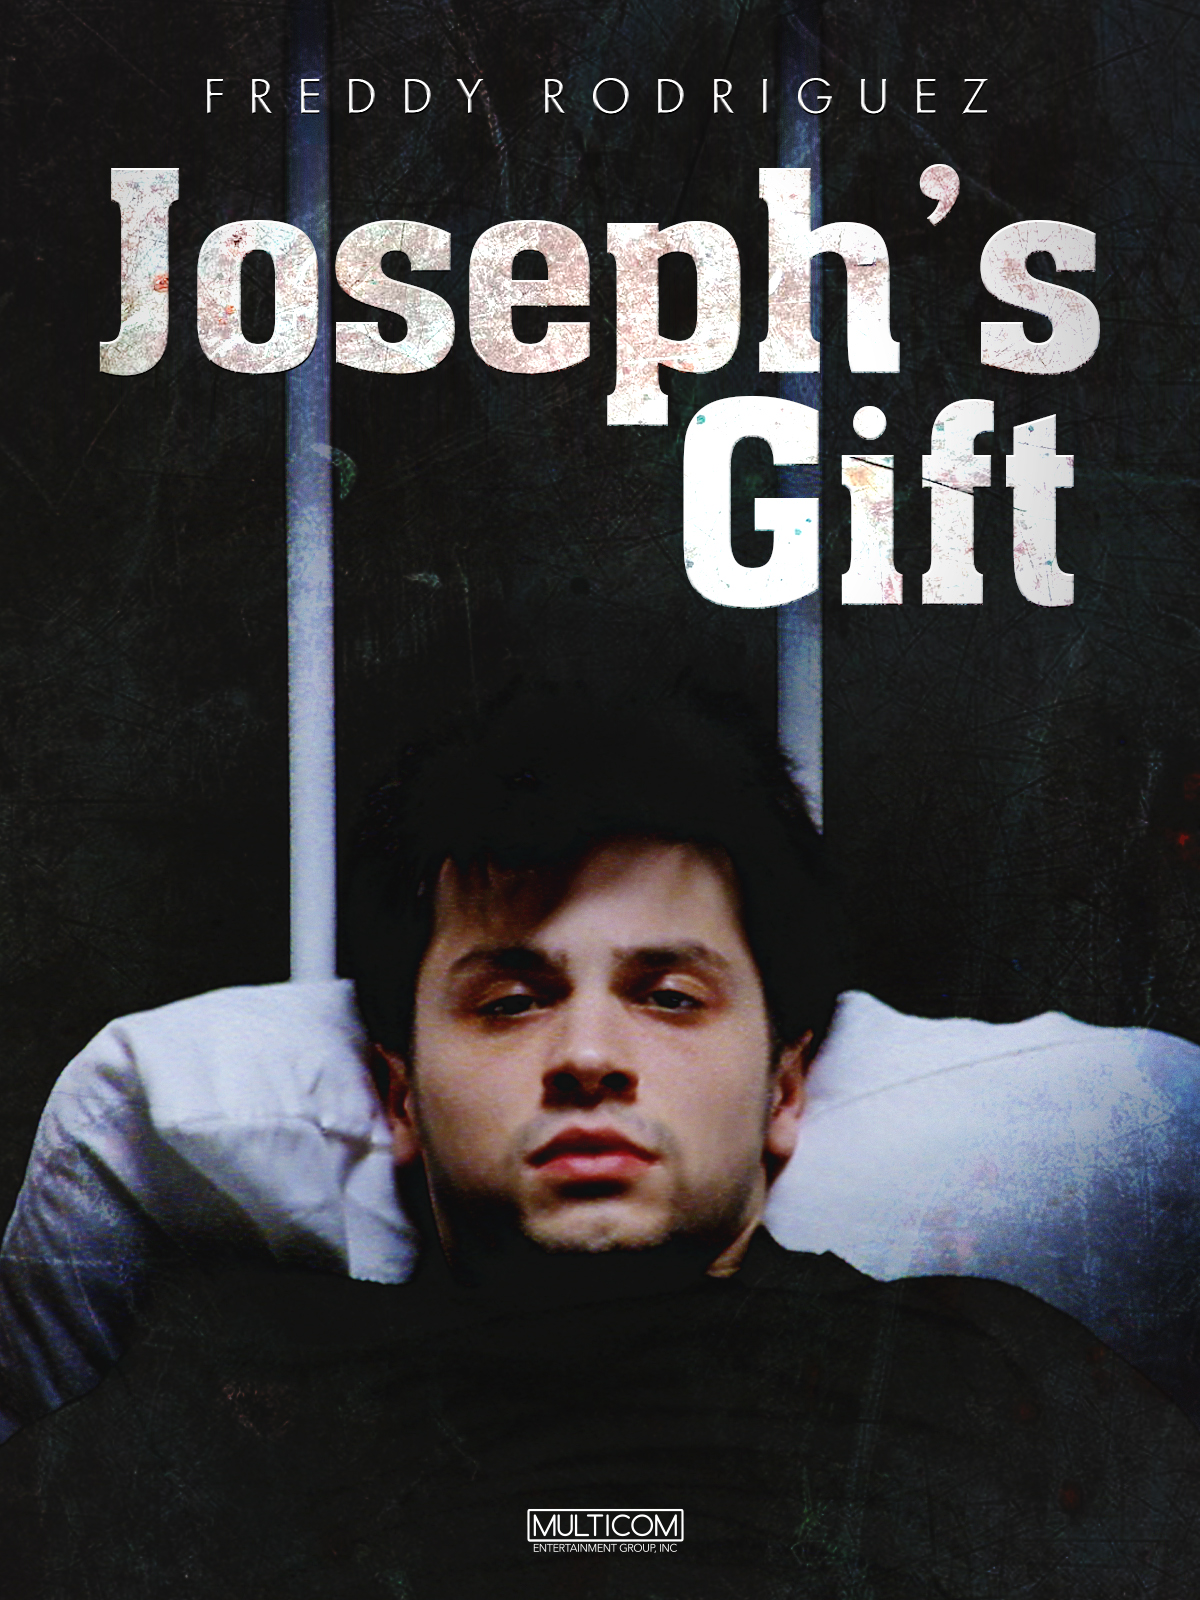 Joseph's Gift (1999) Screenshot 1 